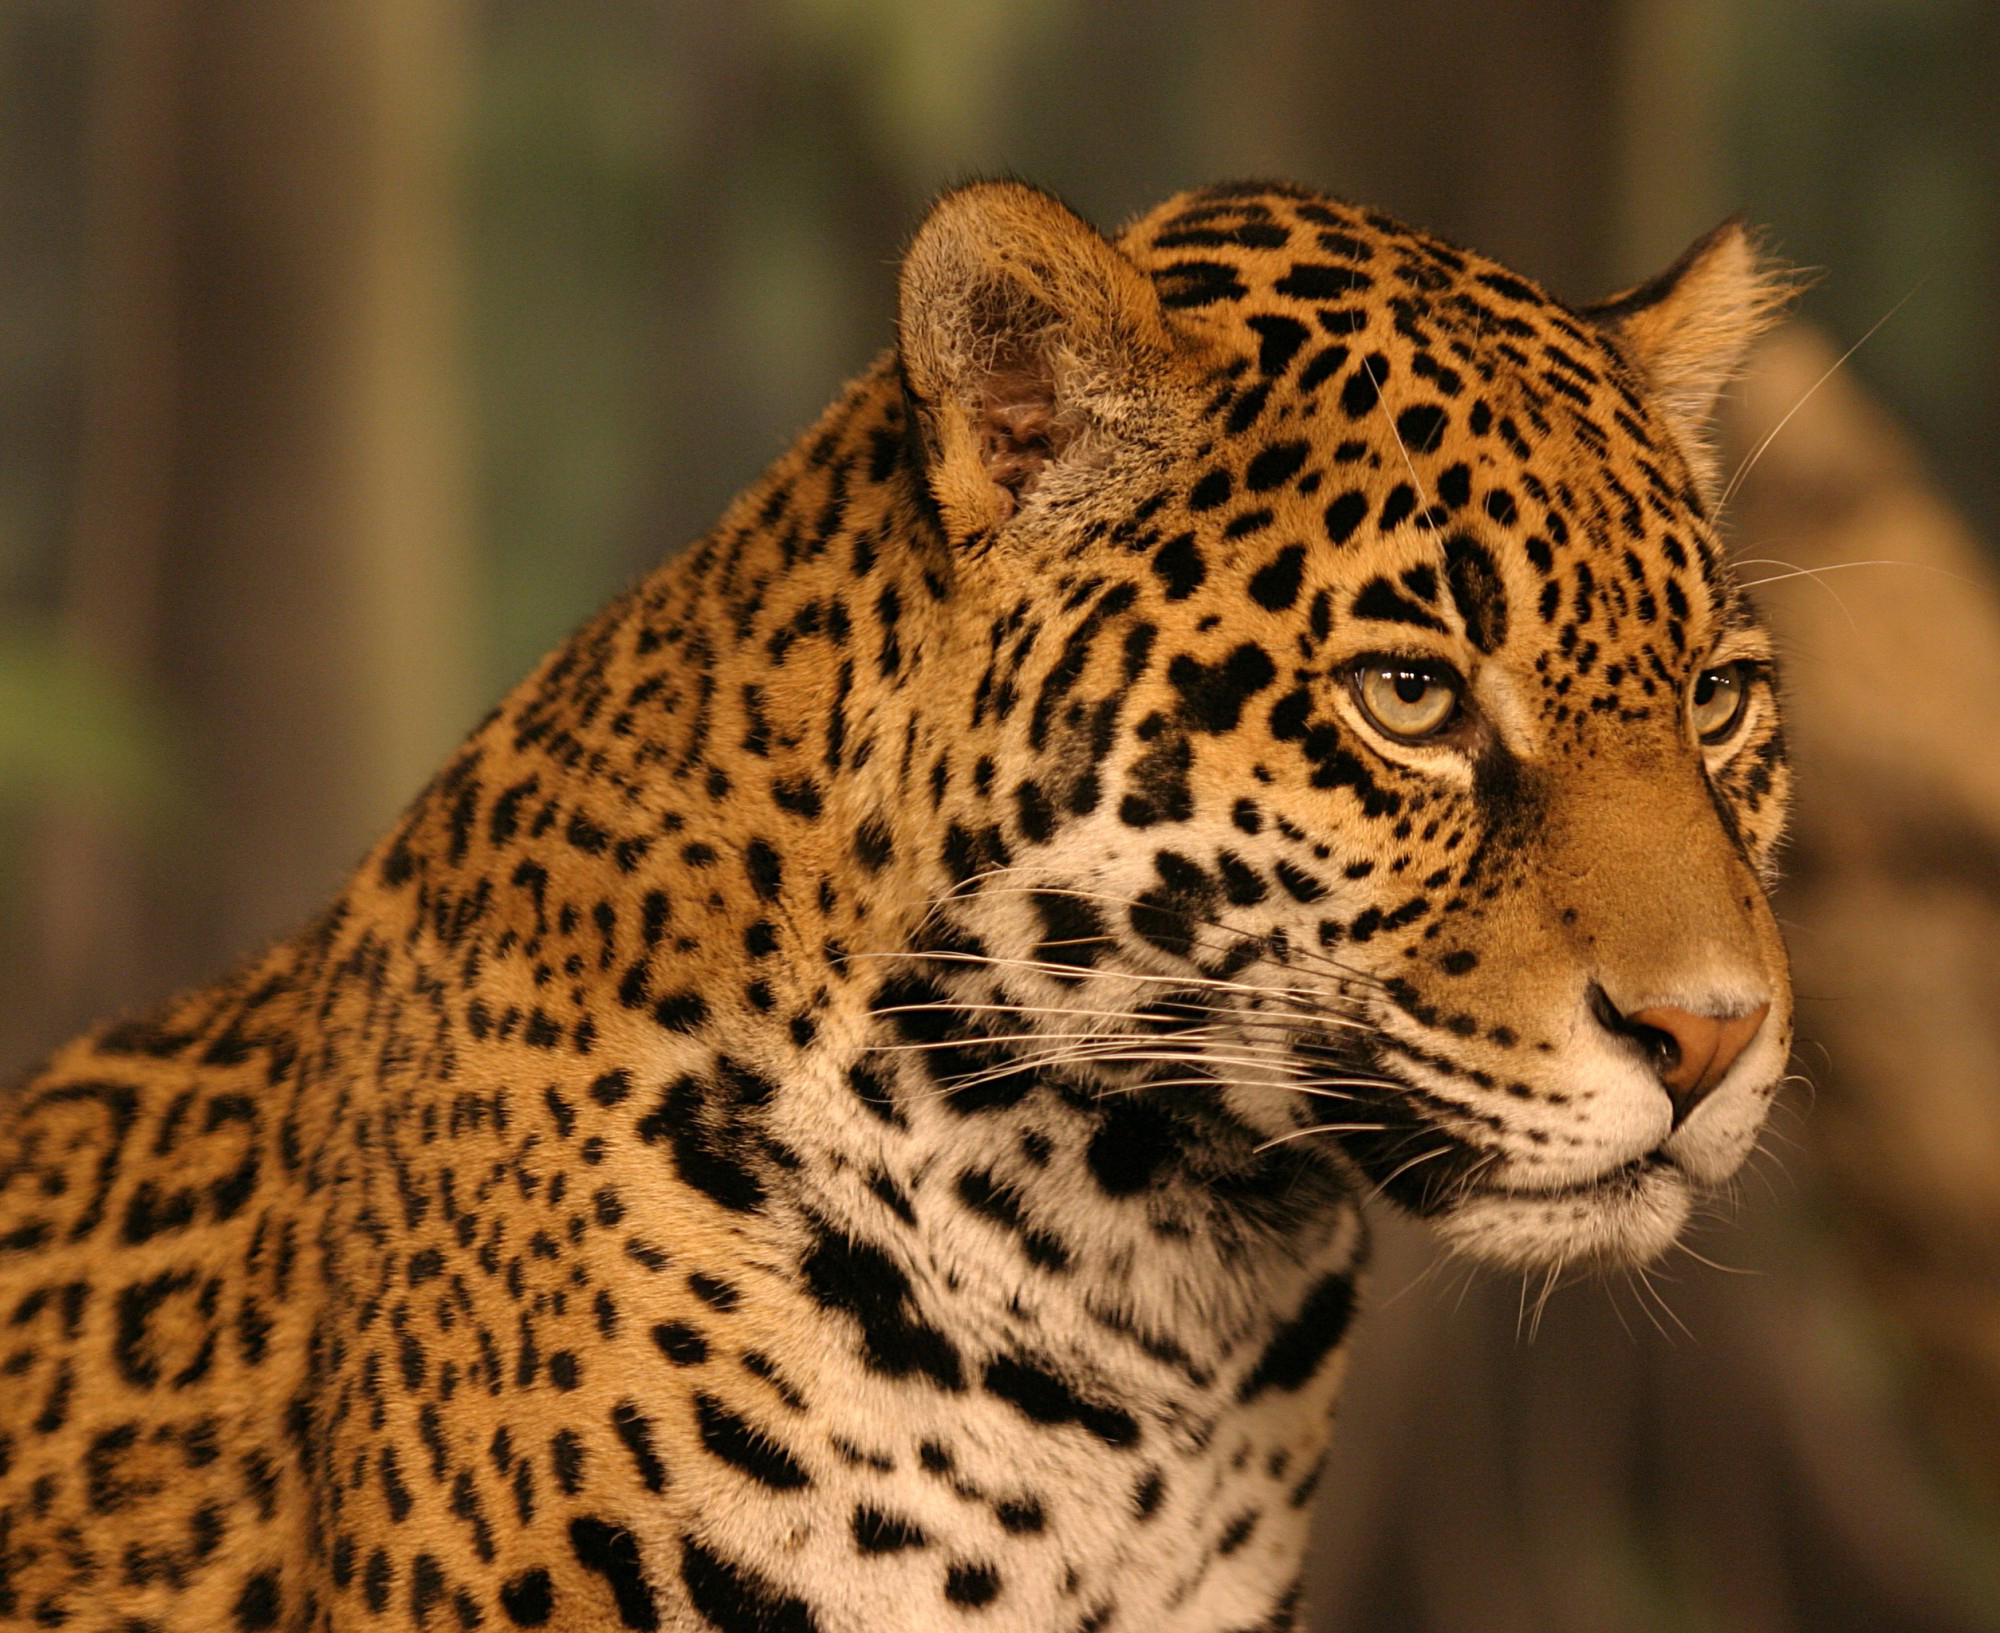 jaguar animal hd wallpapers 1080p,terrestrial animal,mammal,wildlife,vertebrate,jaguar